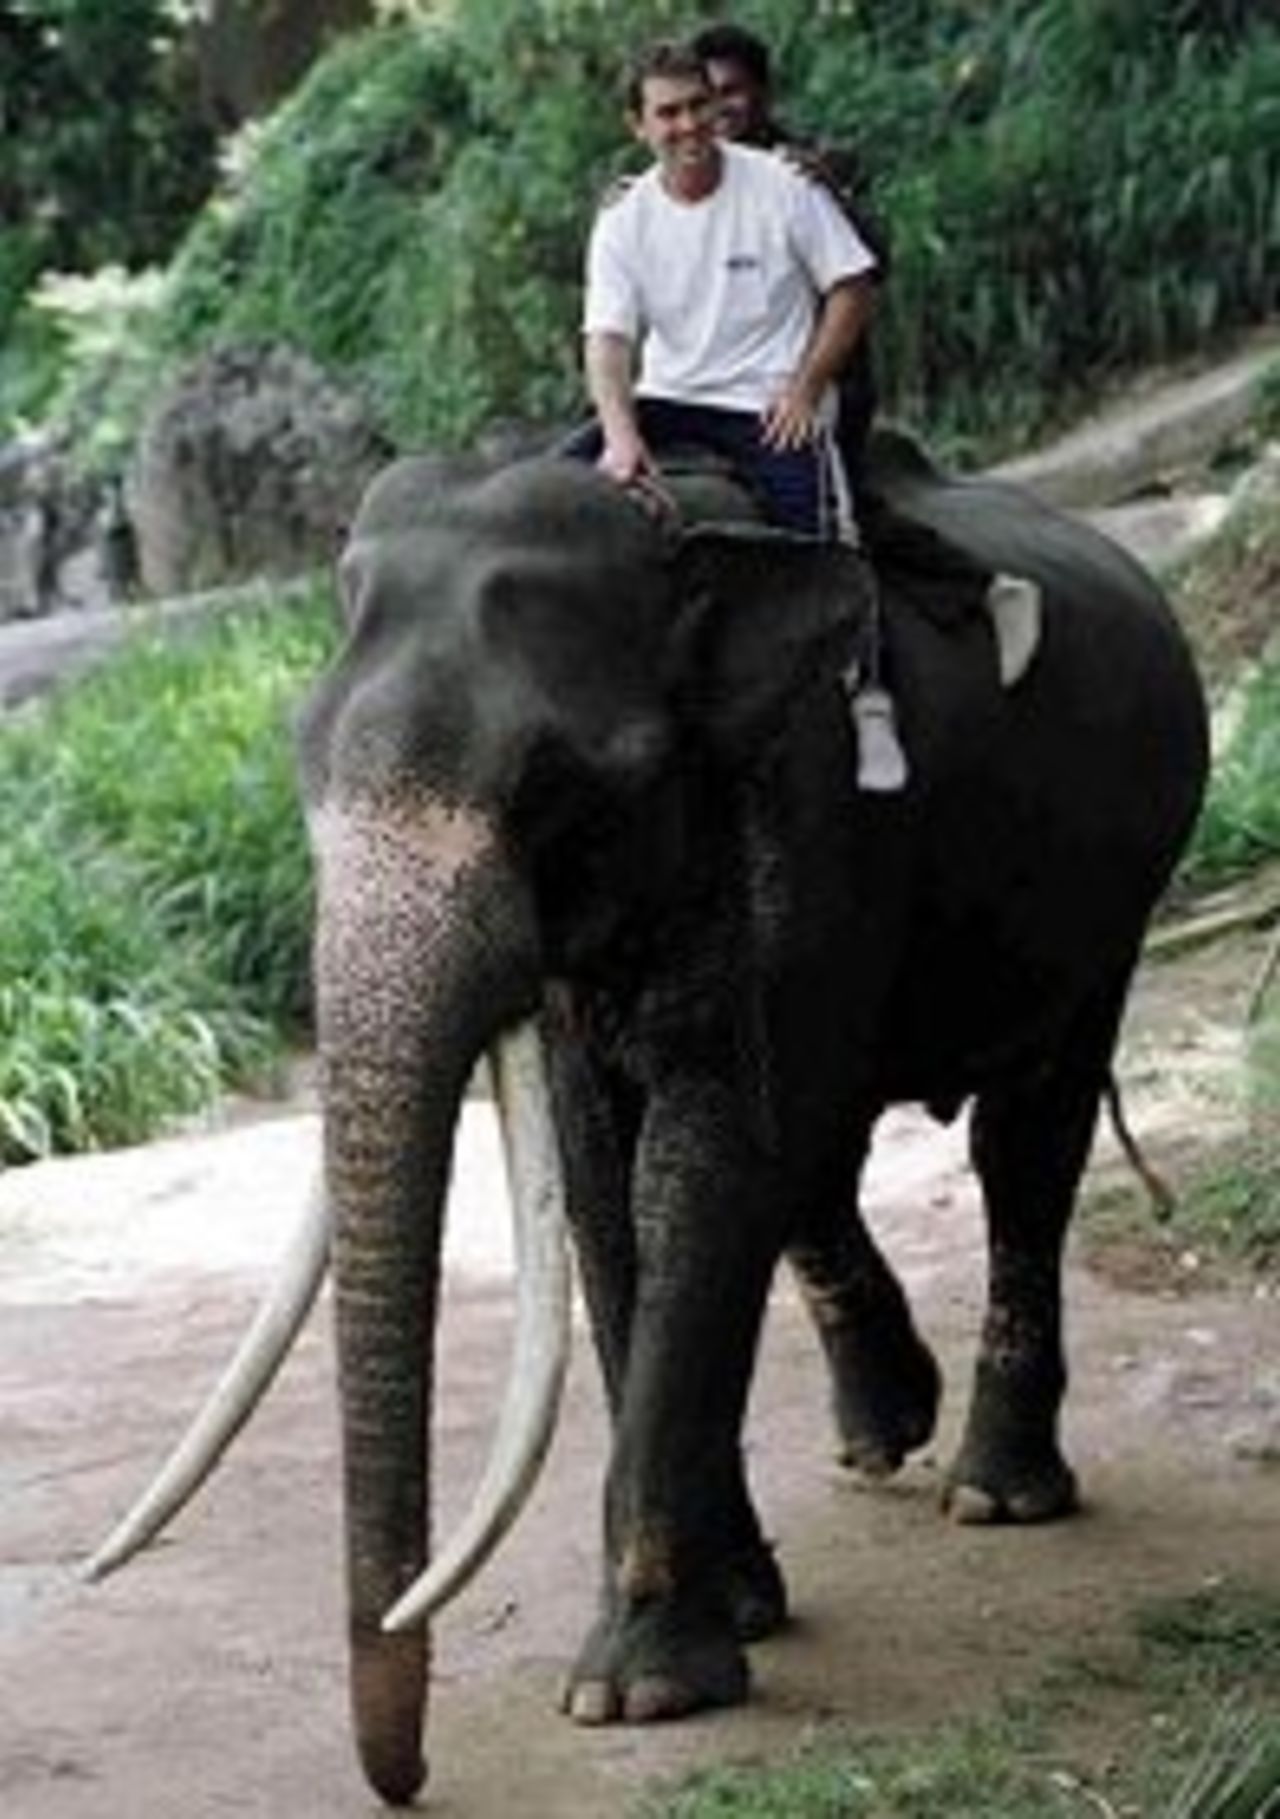 Justin Langer enjoys a ride on an elephant at Kandy's Elephant Sanctuary. 8 Sep 1999